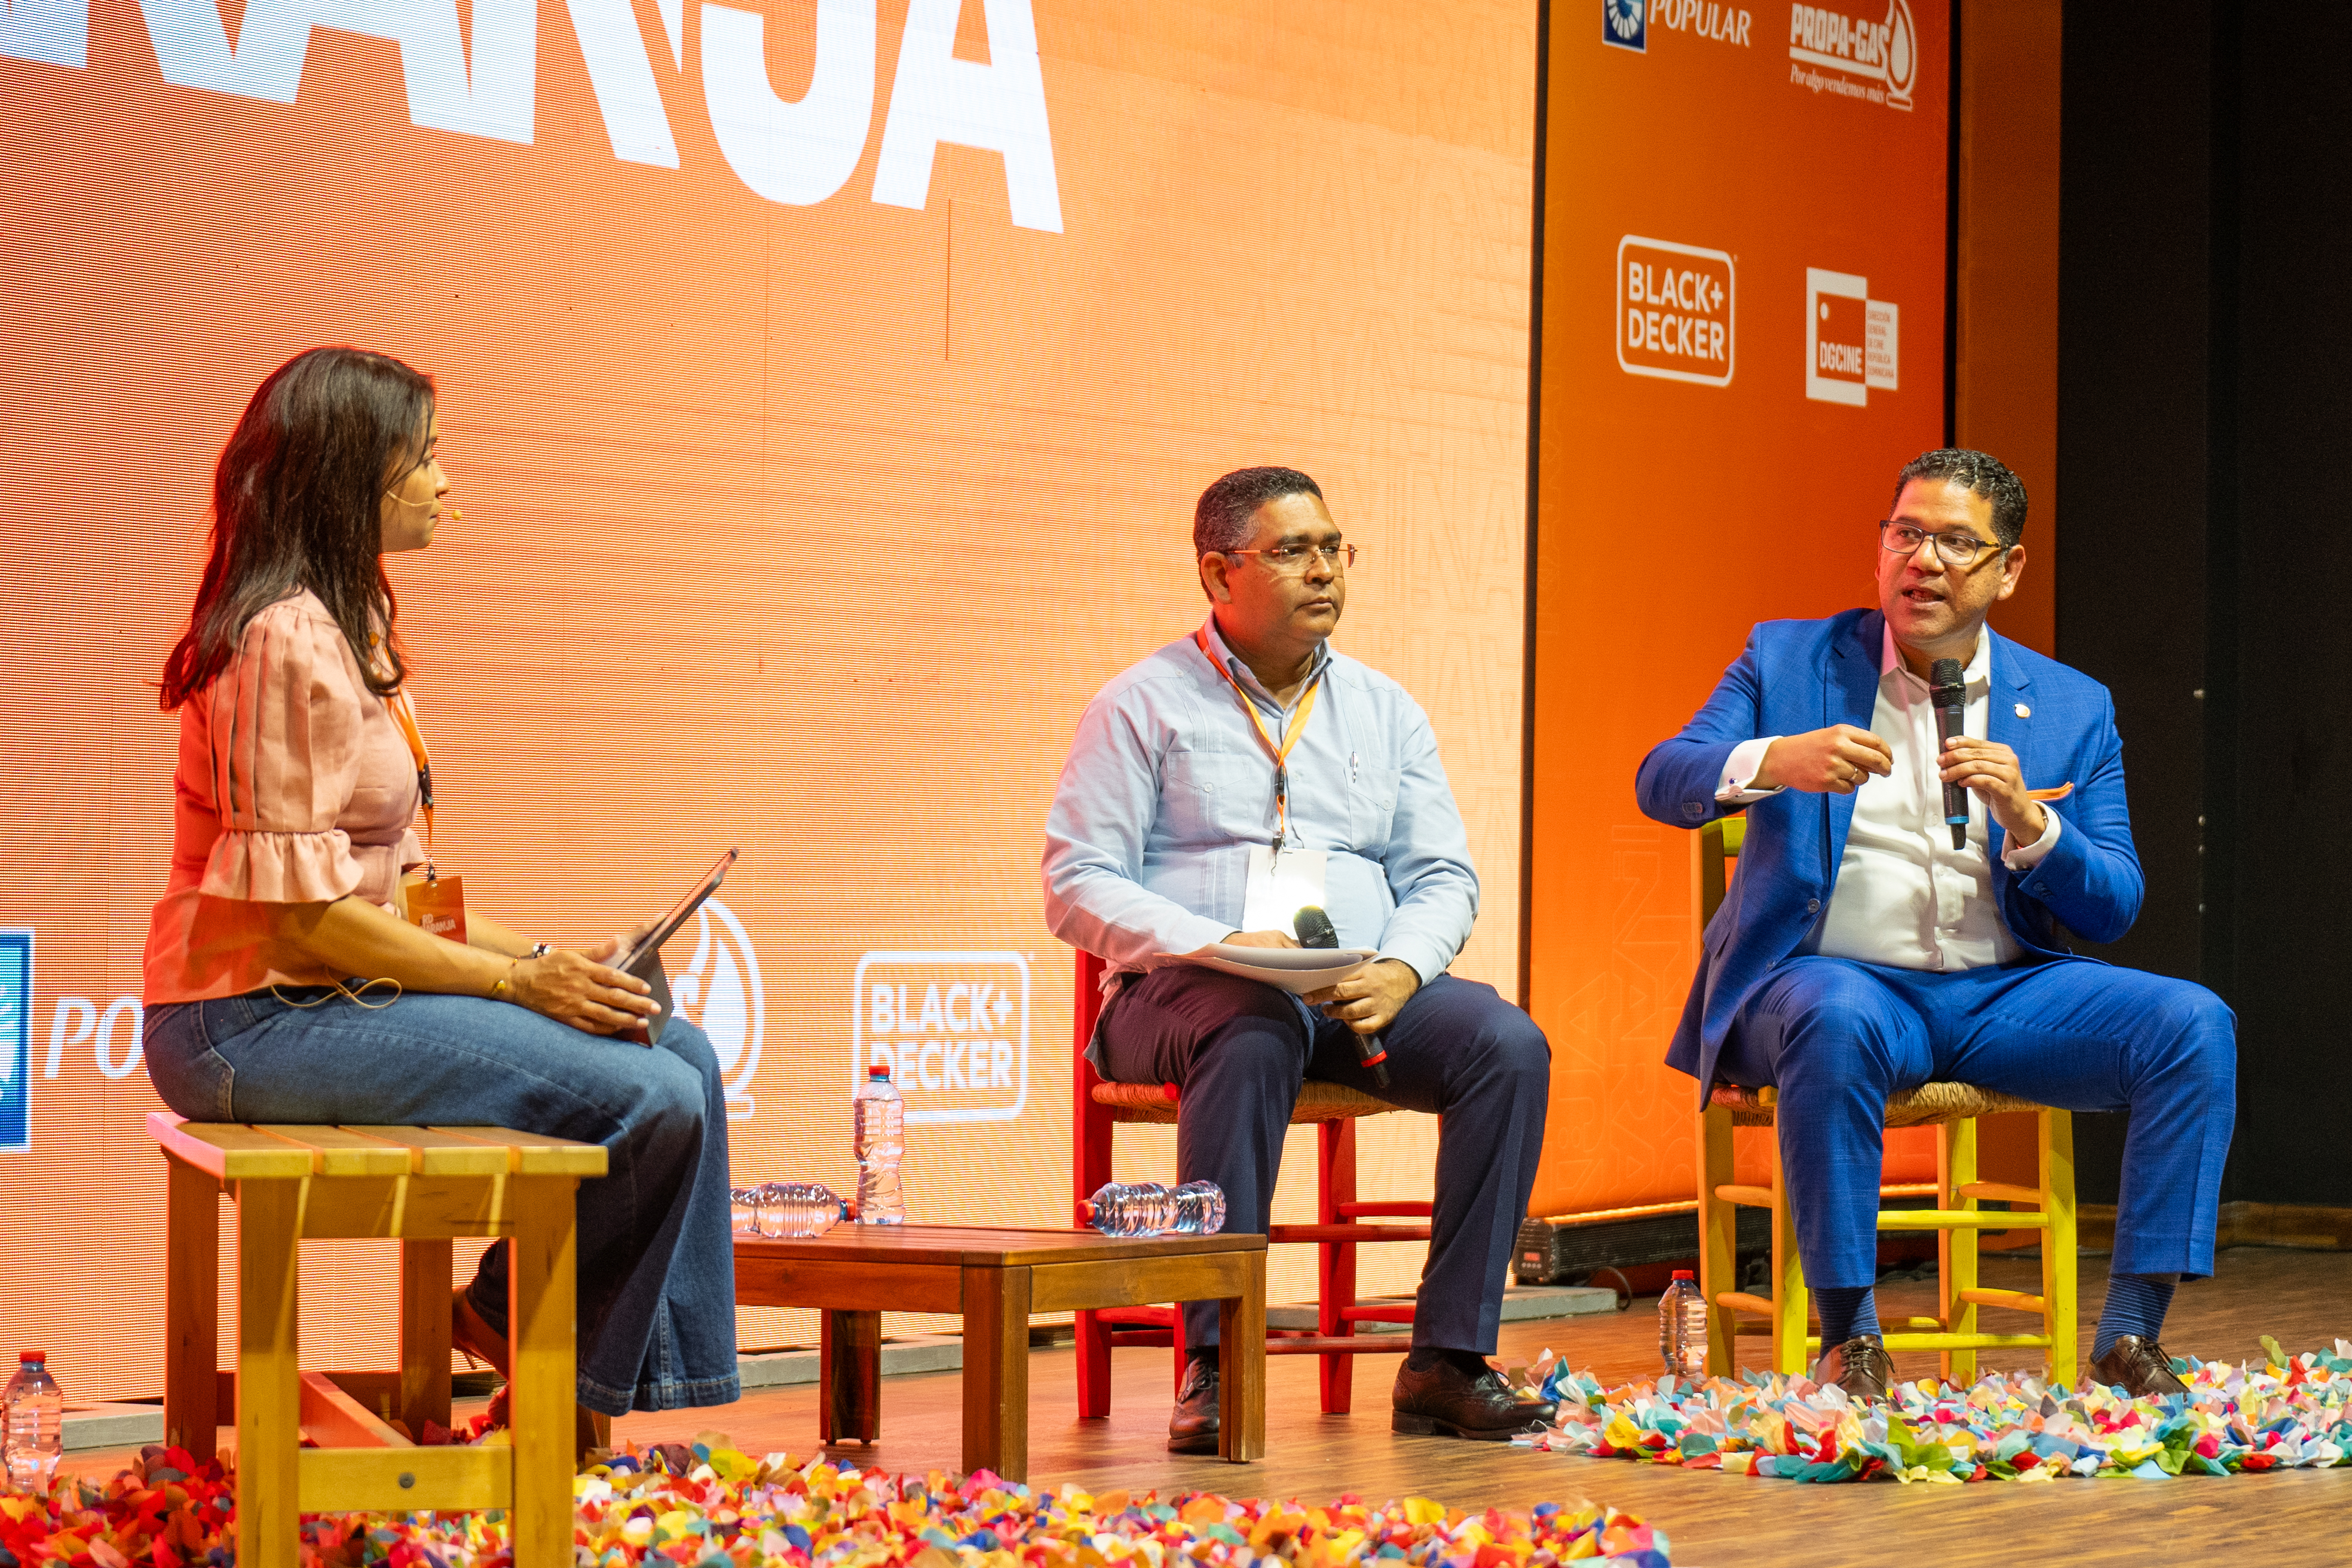 REPÚBLICA DOMINICANA: Primer Congreso Nacional de Industrias Creativas RD Naranja inicia con gran aceptación de emprendedores y público en general